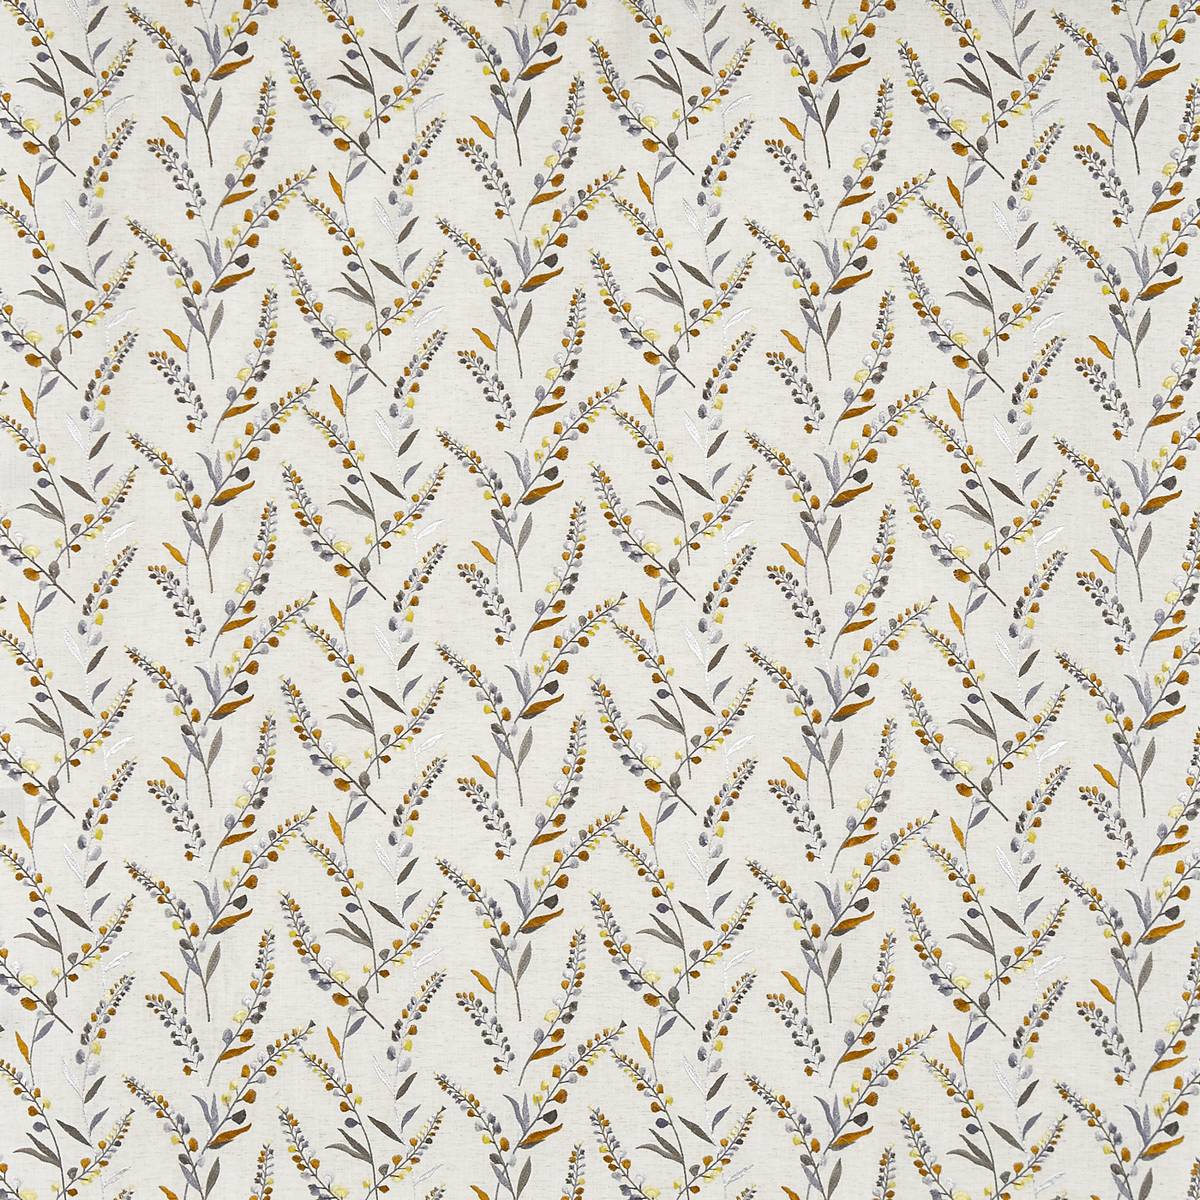 Wisley Saffron Fabric by Prestigious Textiles